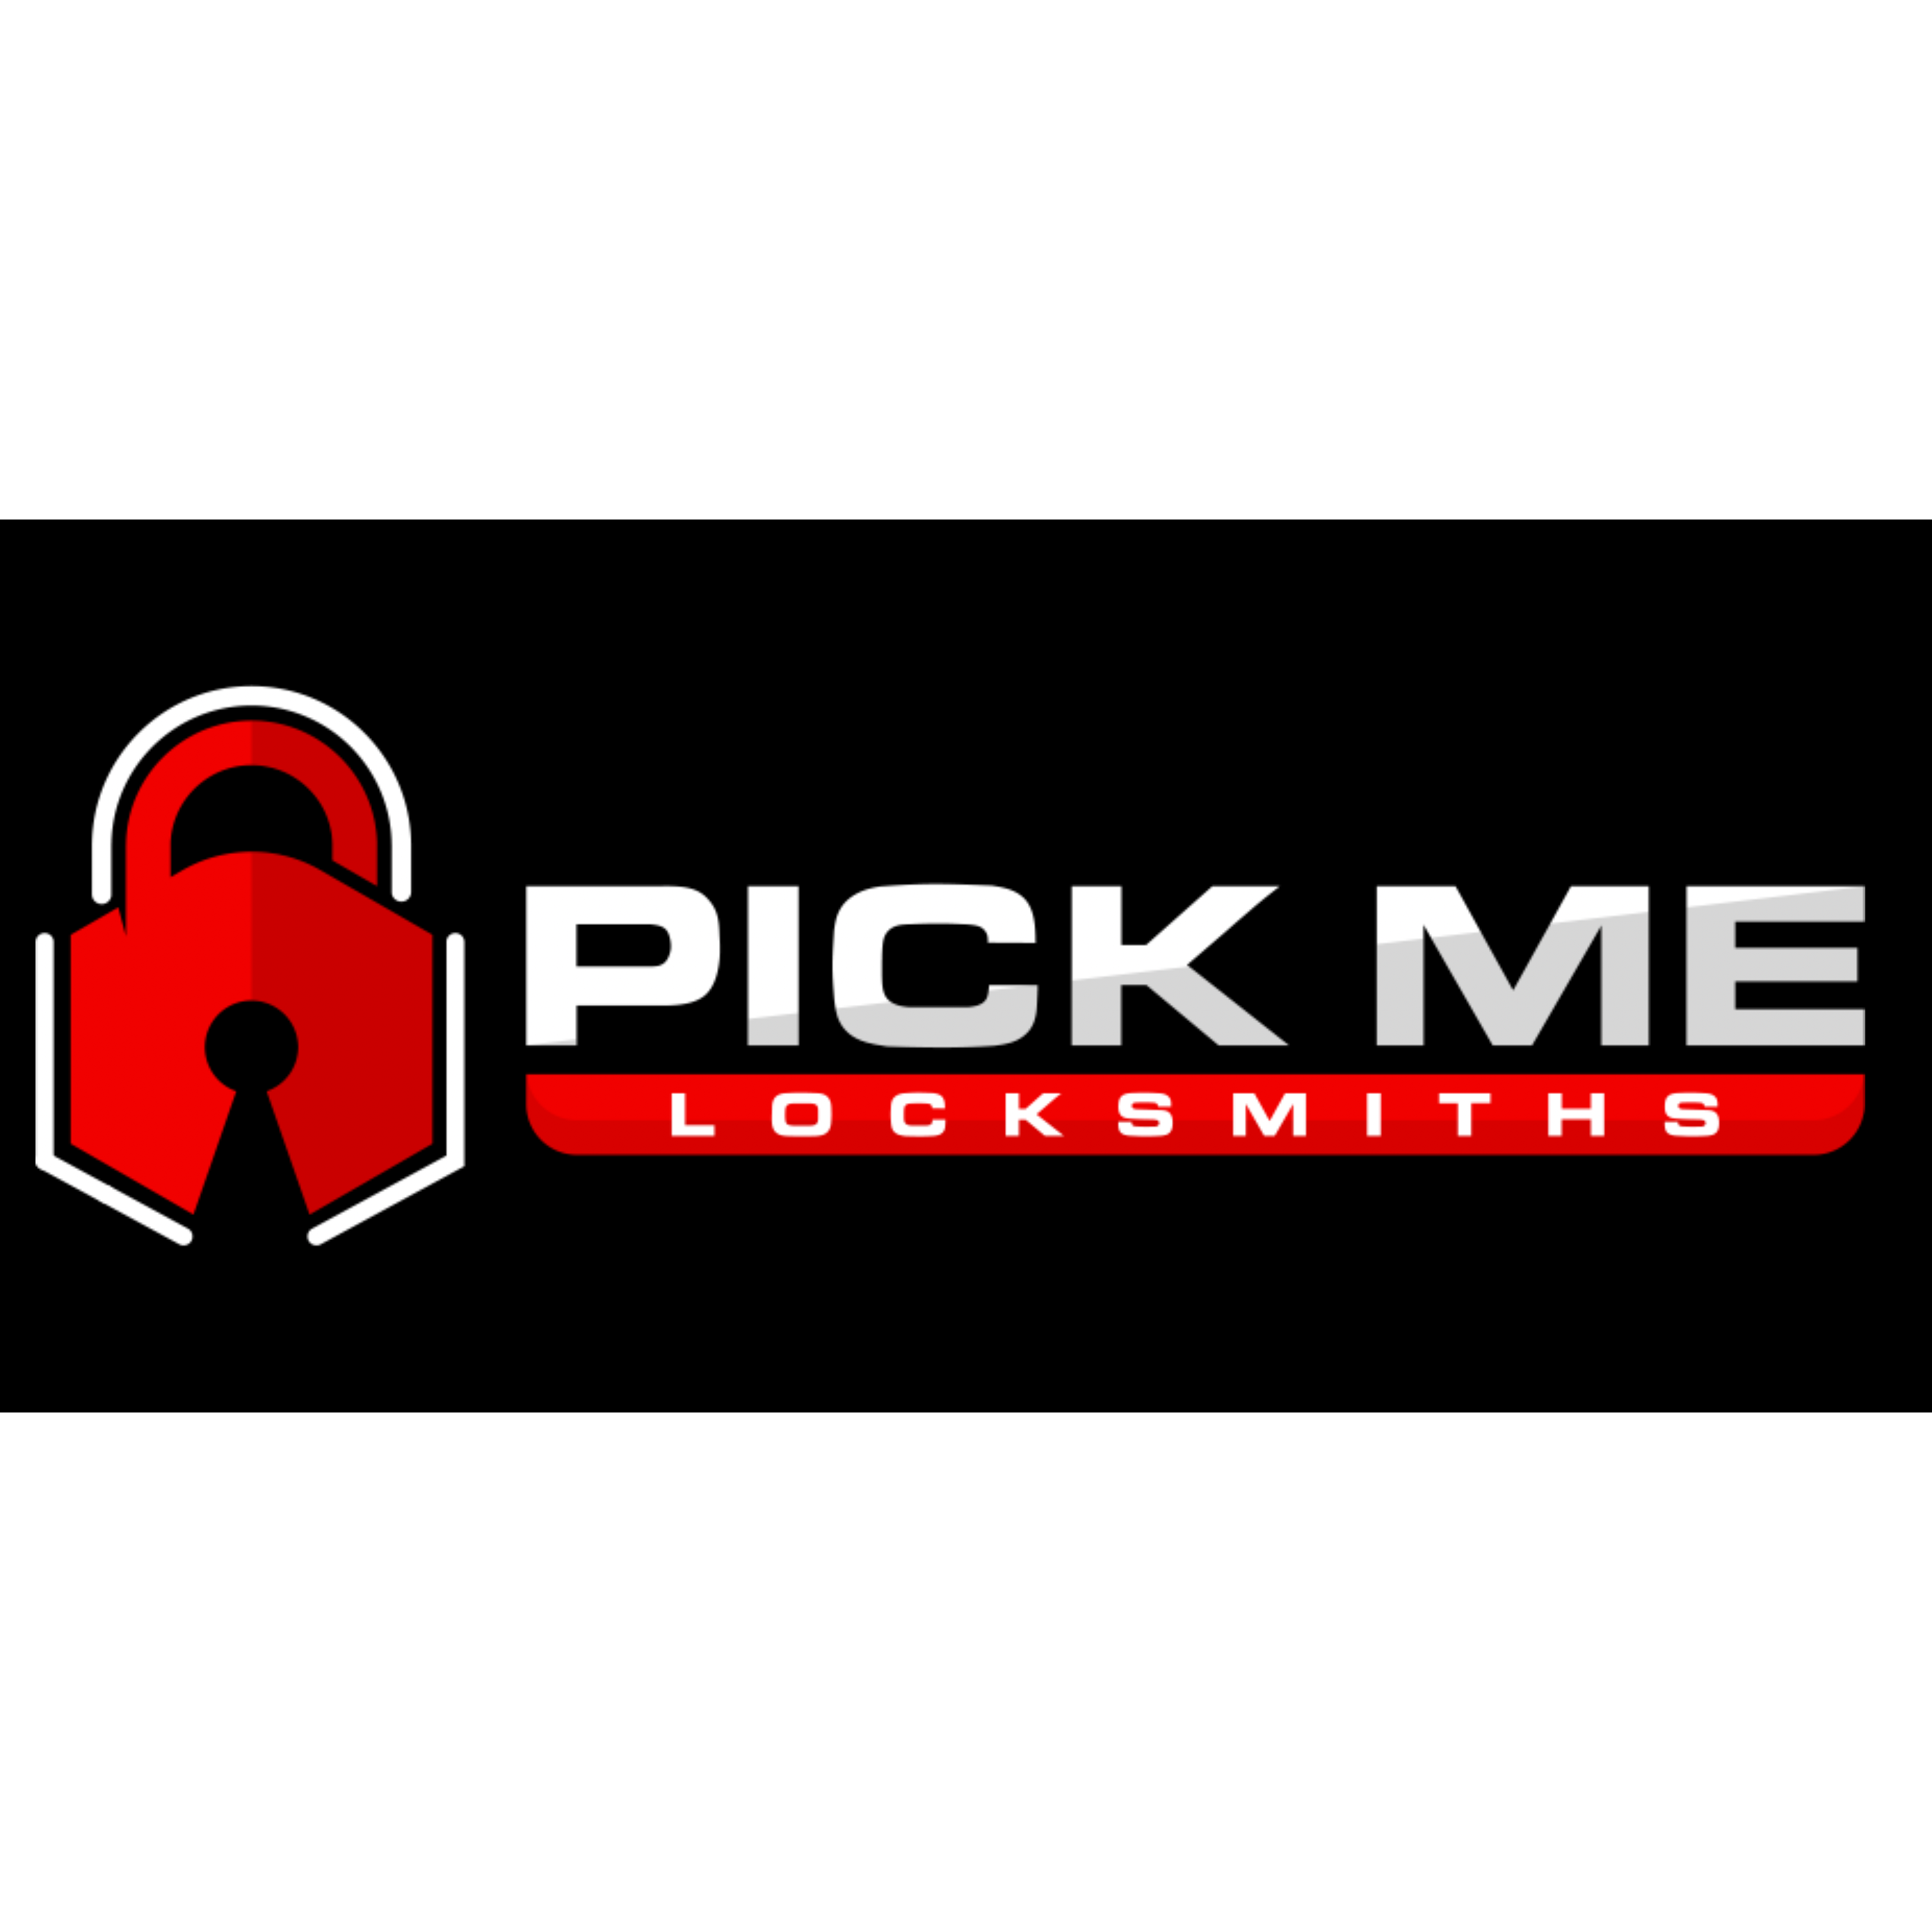 PIckMe locksmith